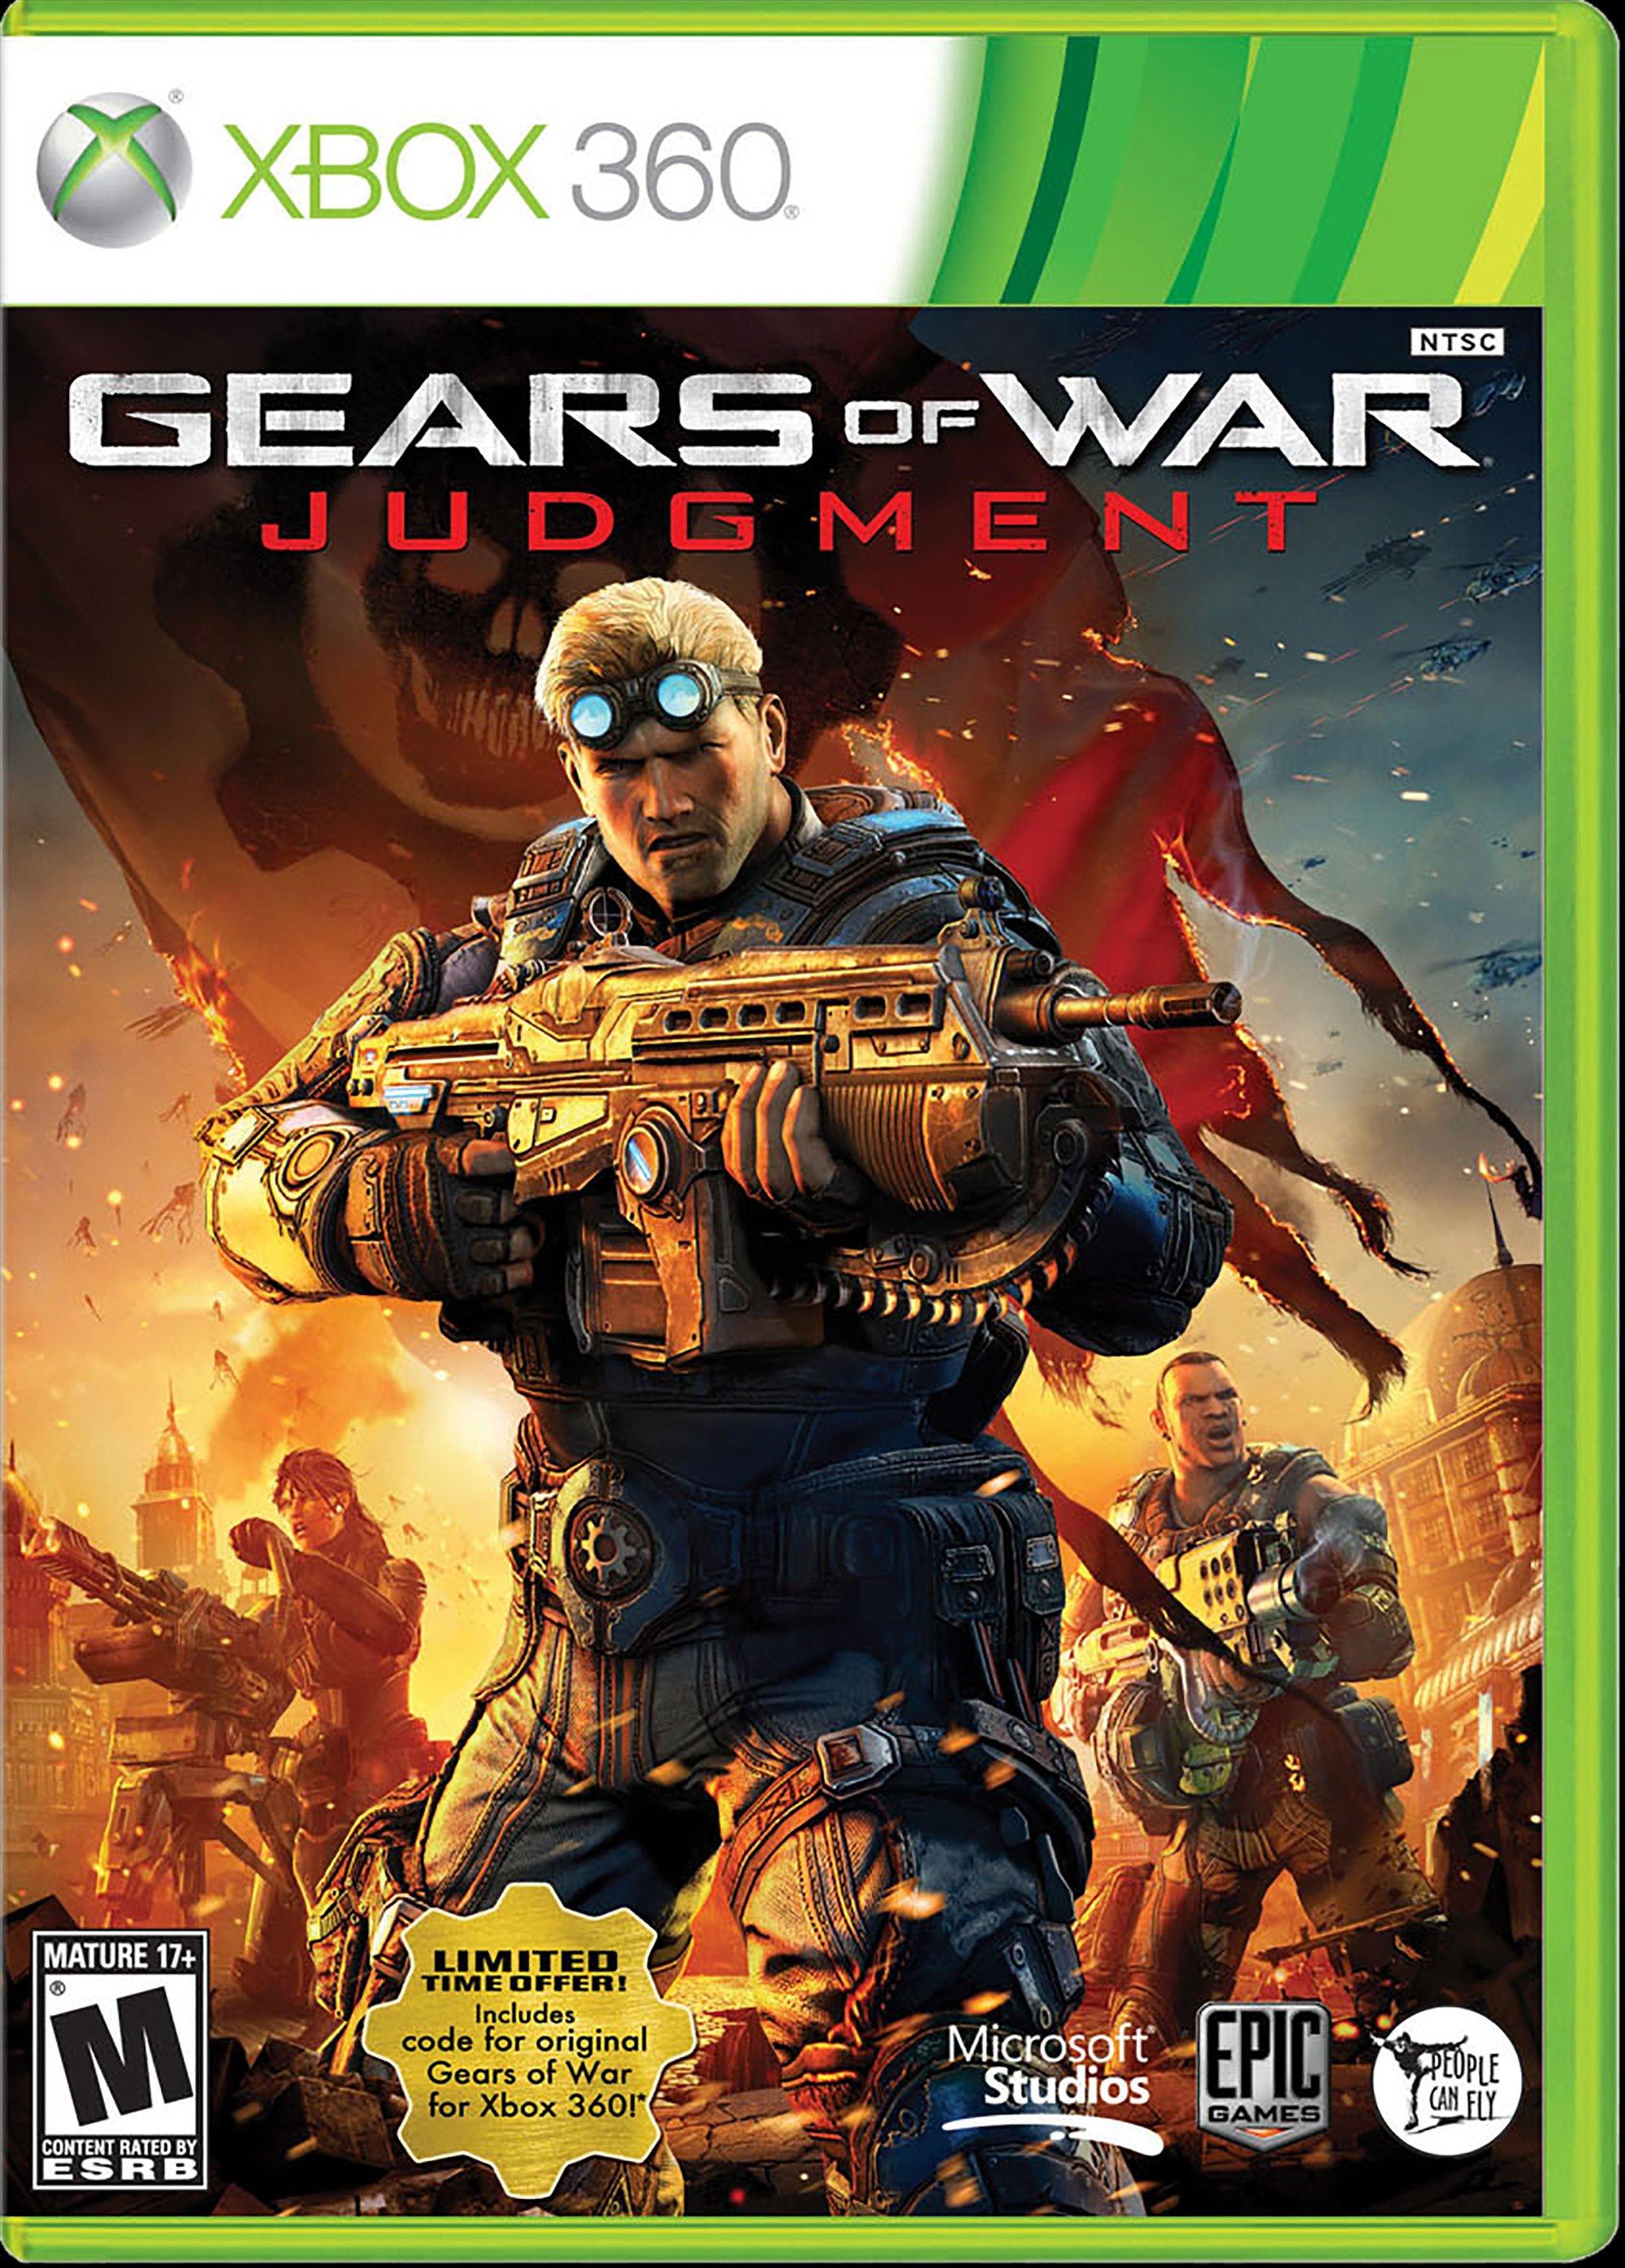 GameStop on X: Happy birthday to Gears of War! Be honest -- how